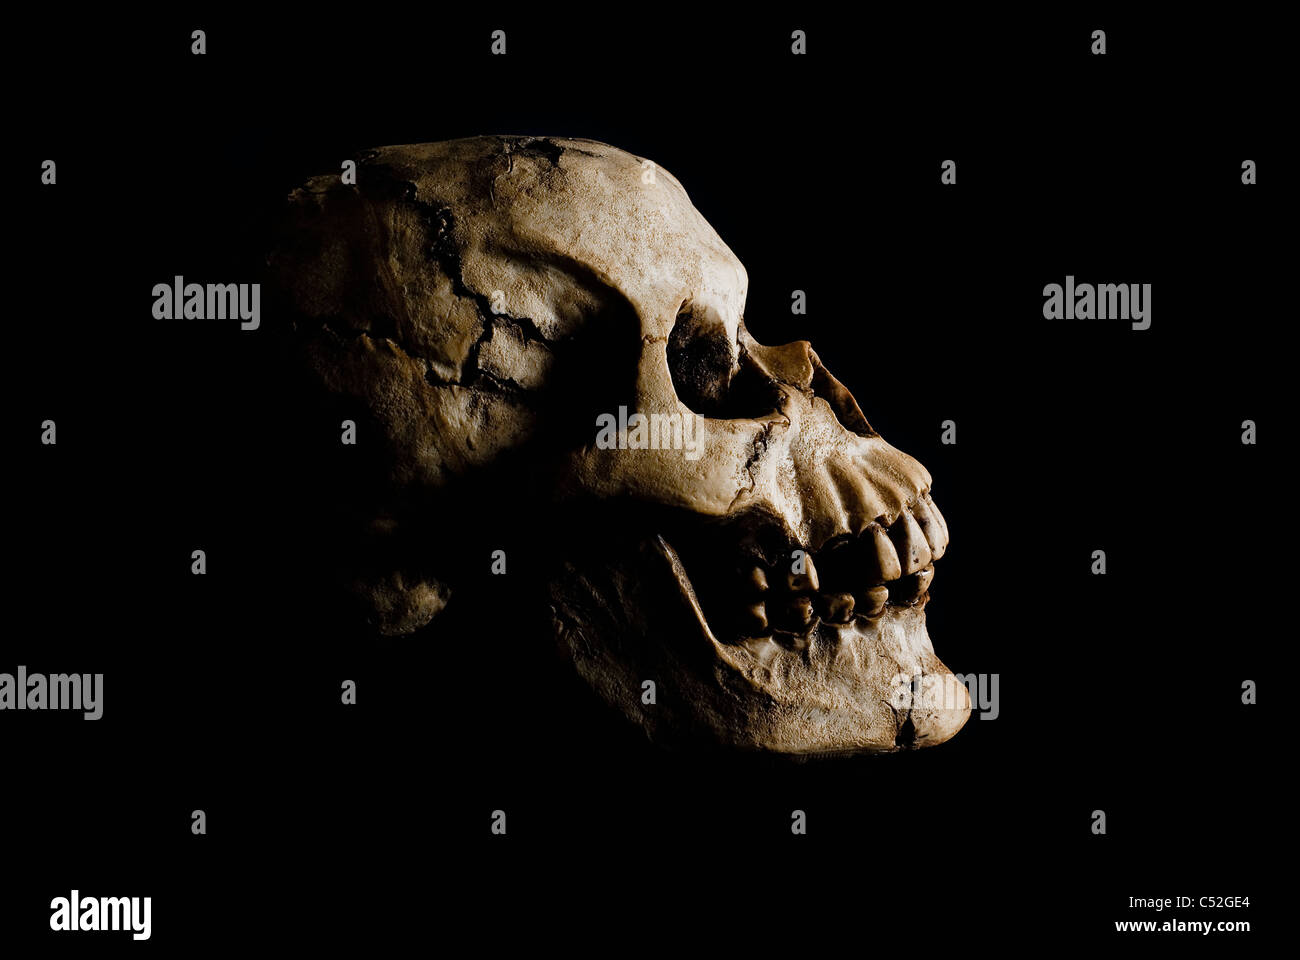 Vista lateral (perfil) de la antigua cráneo humano en sombra profunda. Foto de stock